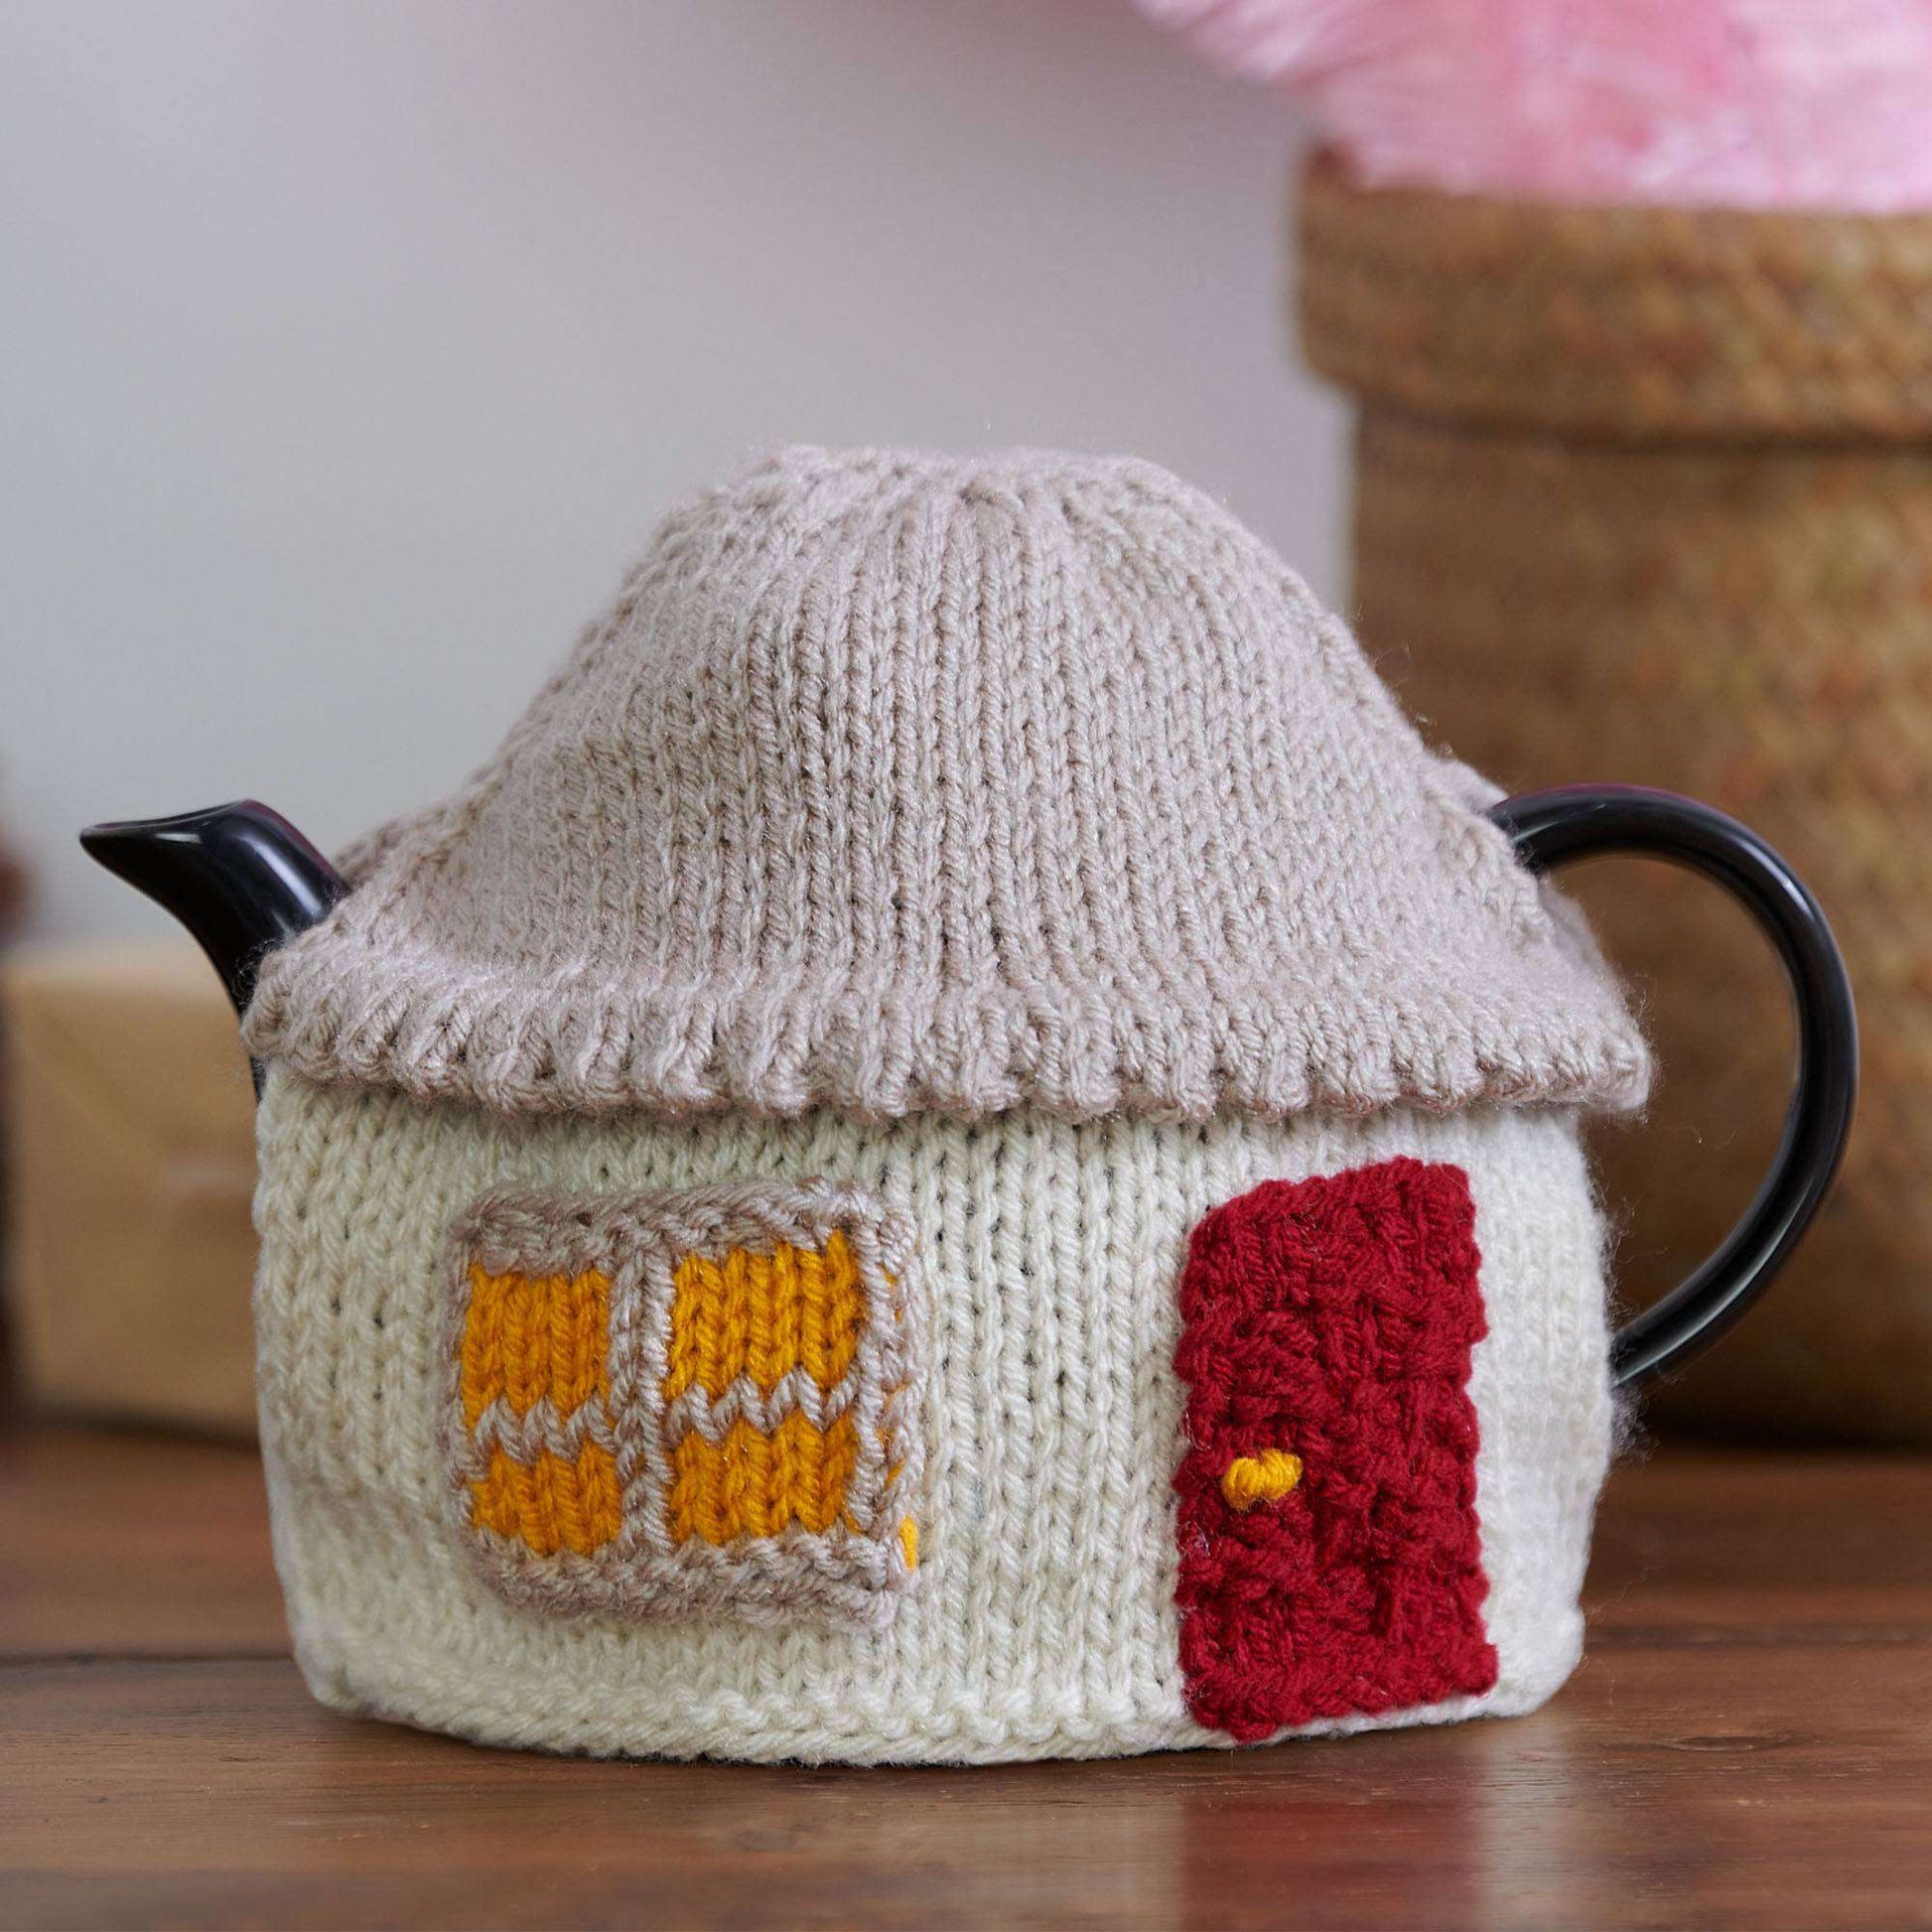 Free Red Heart Knit Cozy Cabin Tea Cozy Pattern